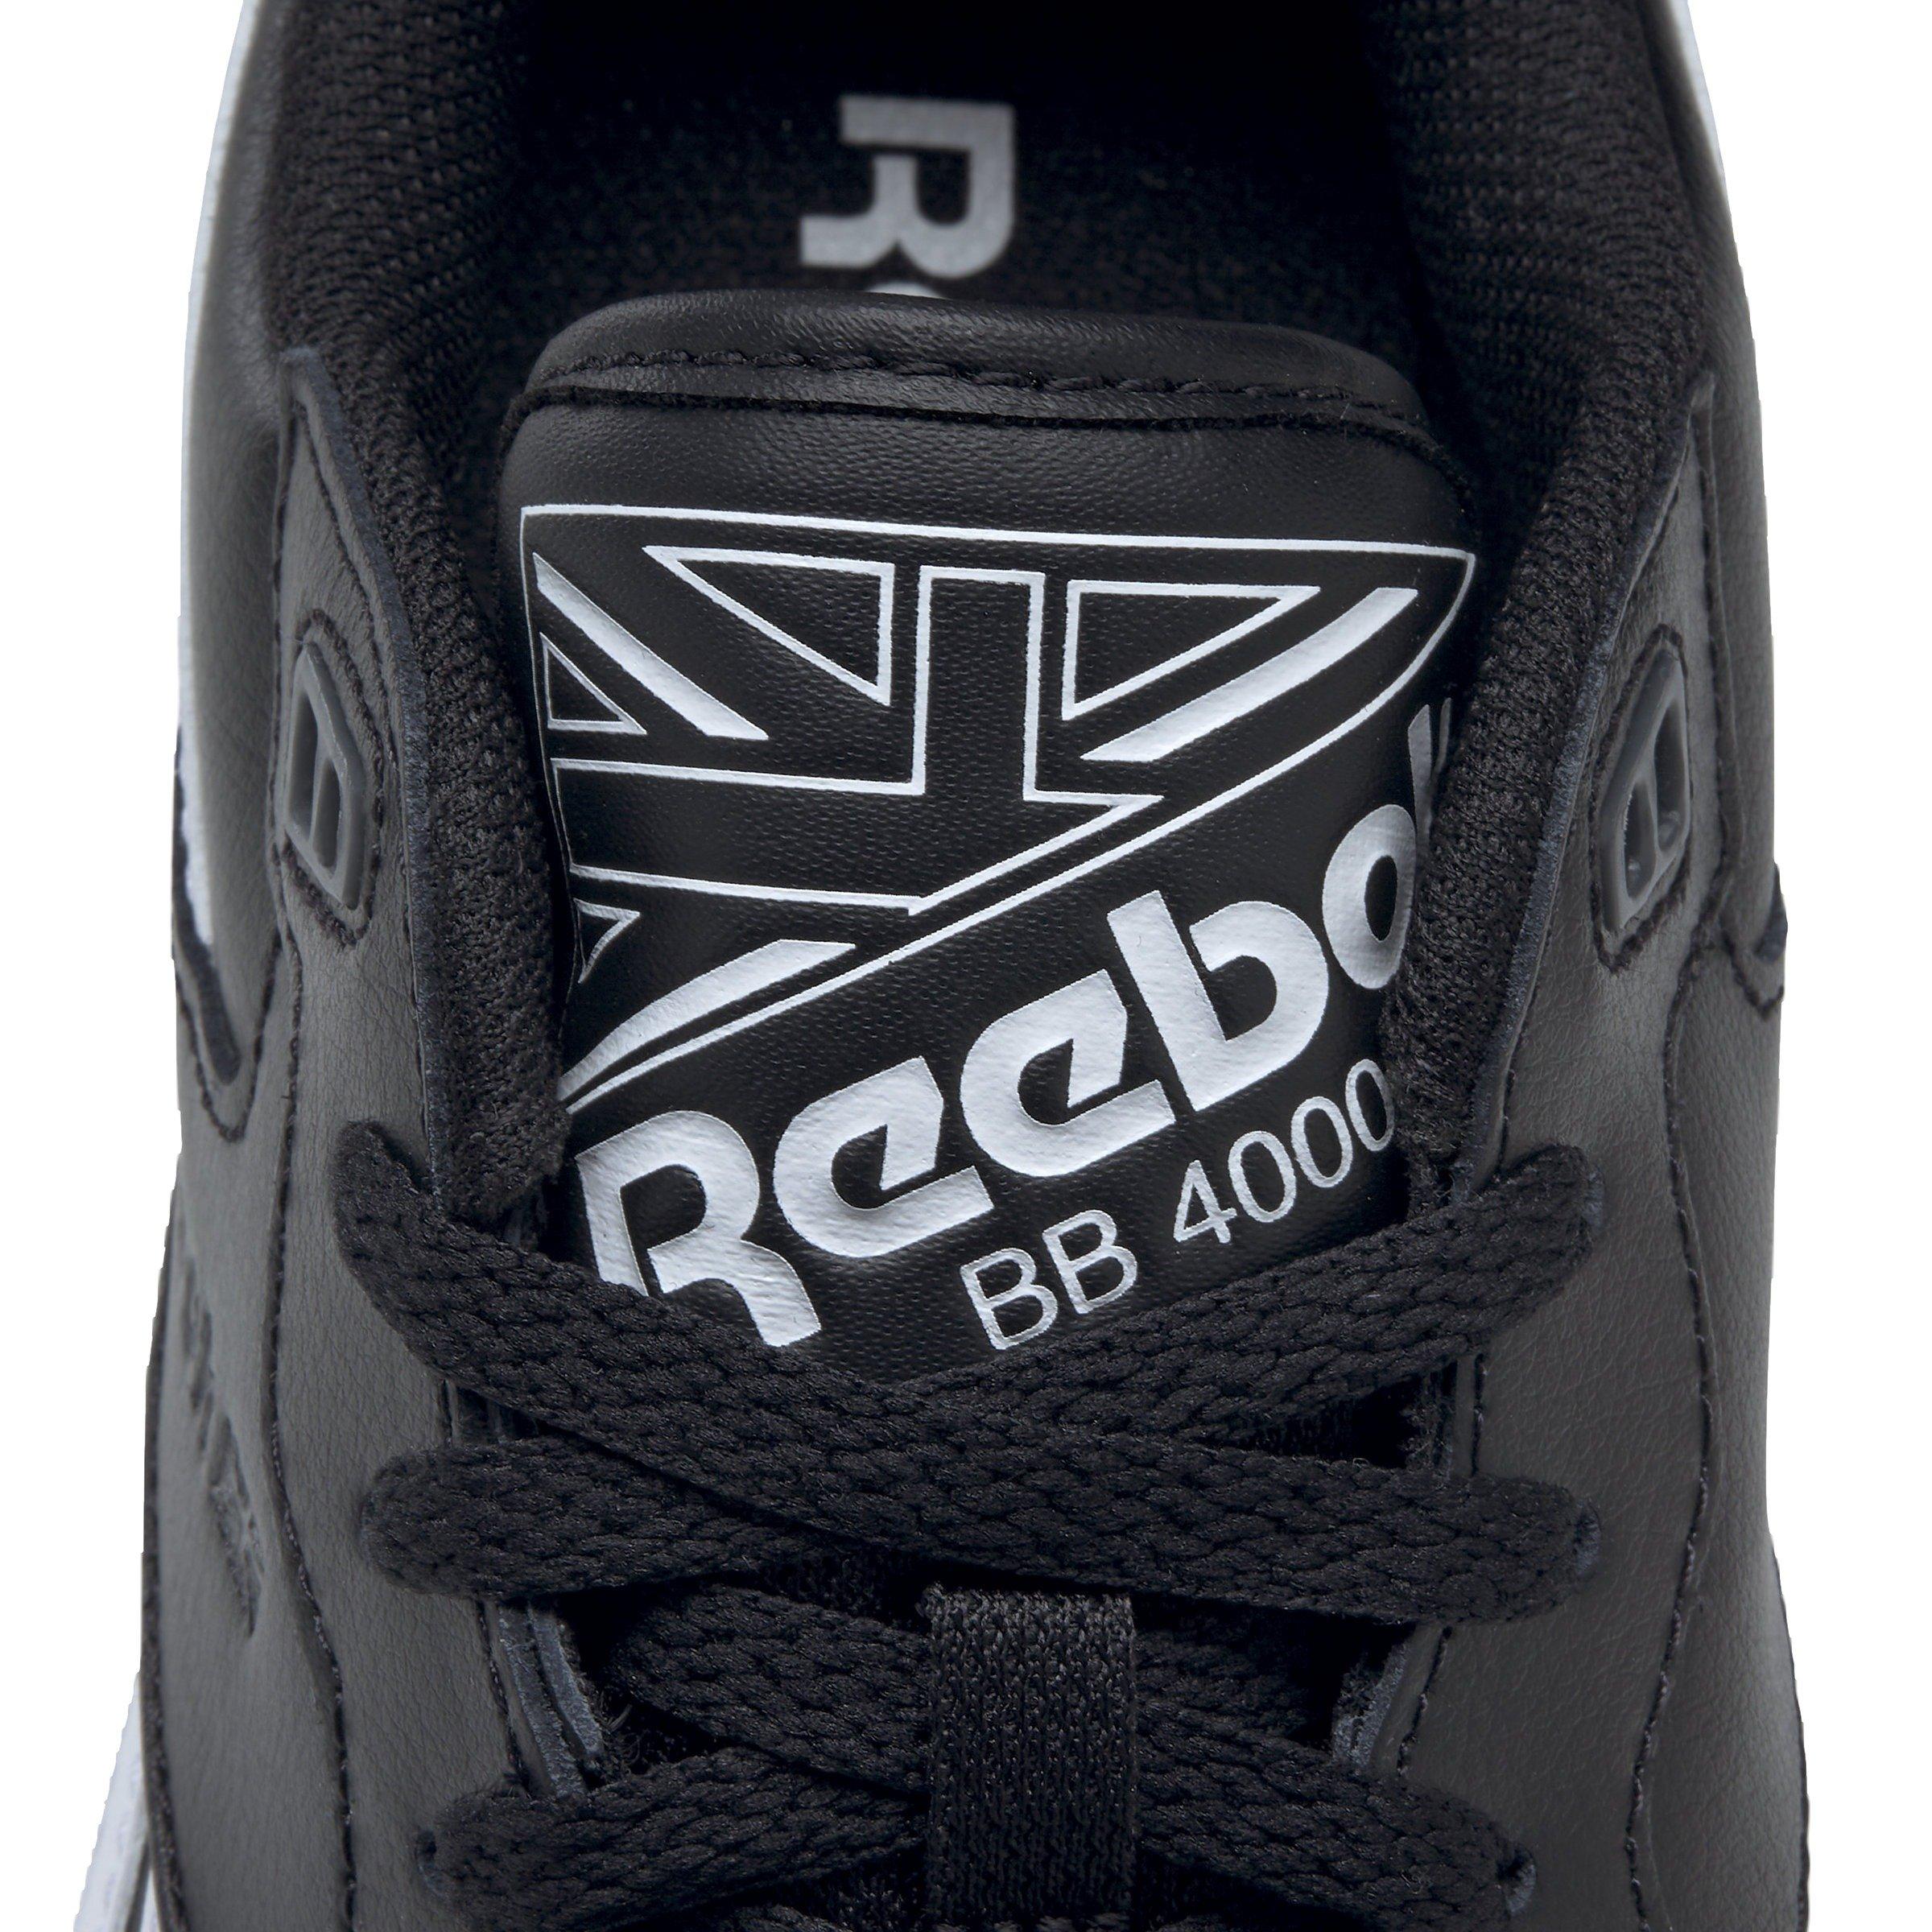 Reebok Footwear Men BB 4000 II Shoes FTWR WHITE/CORE BLACK/PURE